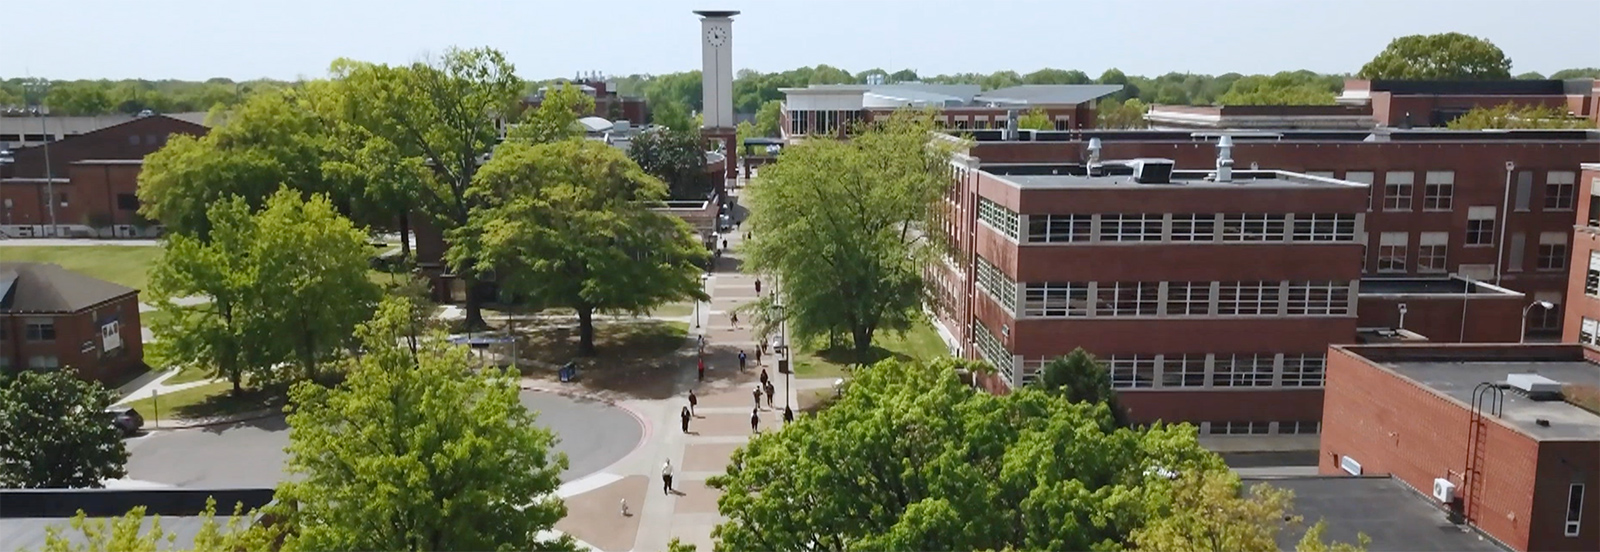 University of Memphis campus 